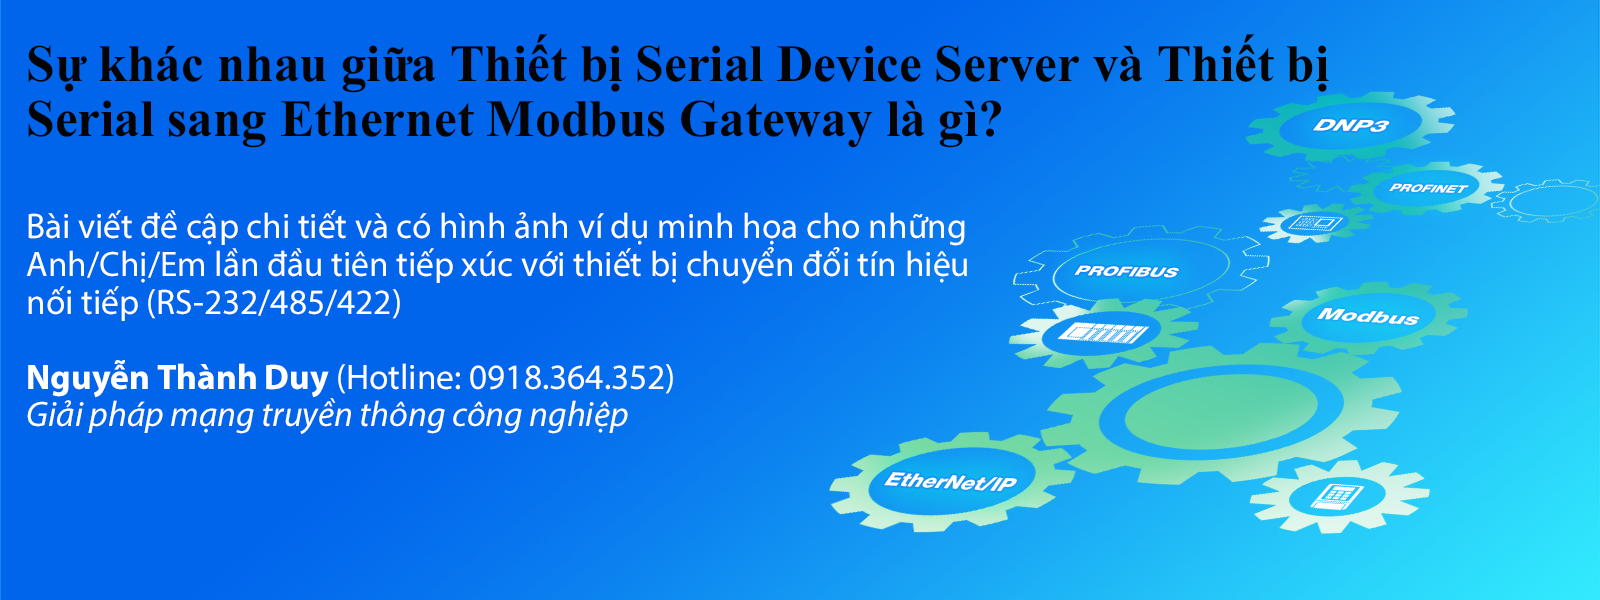 Sự khác nhau giữa Thiết bị Serial Device Server và Thiết bị Serial-Ethernet Modbus Gateway là gì?